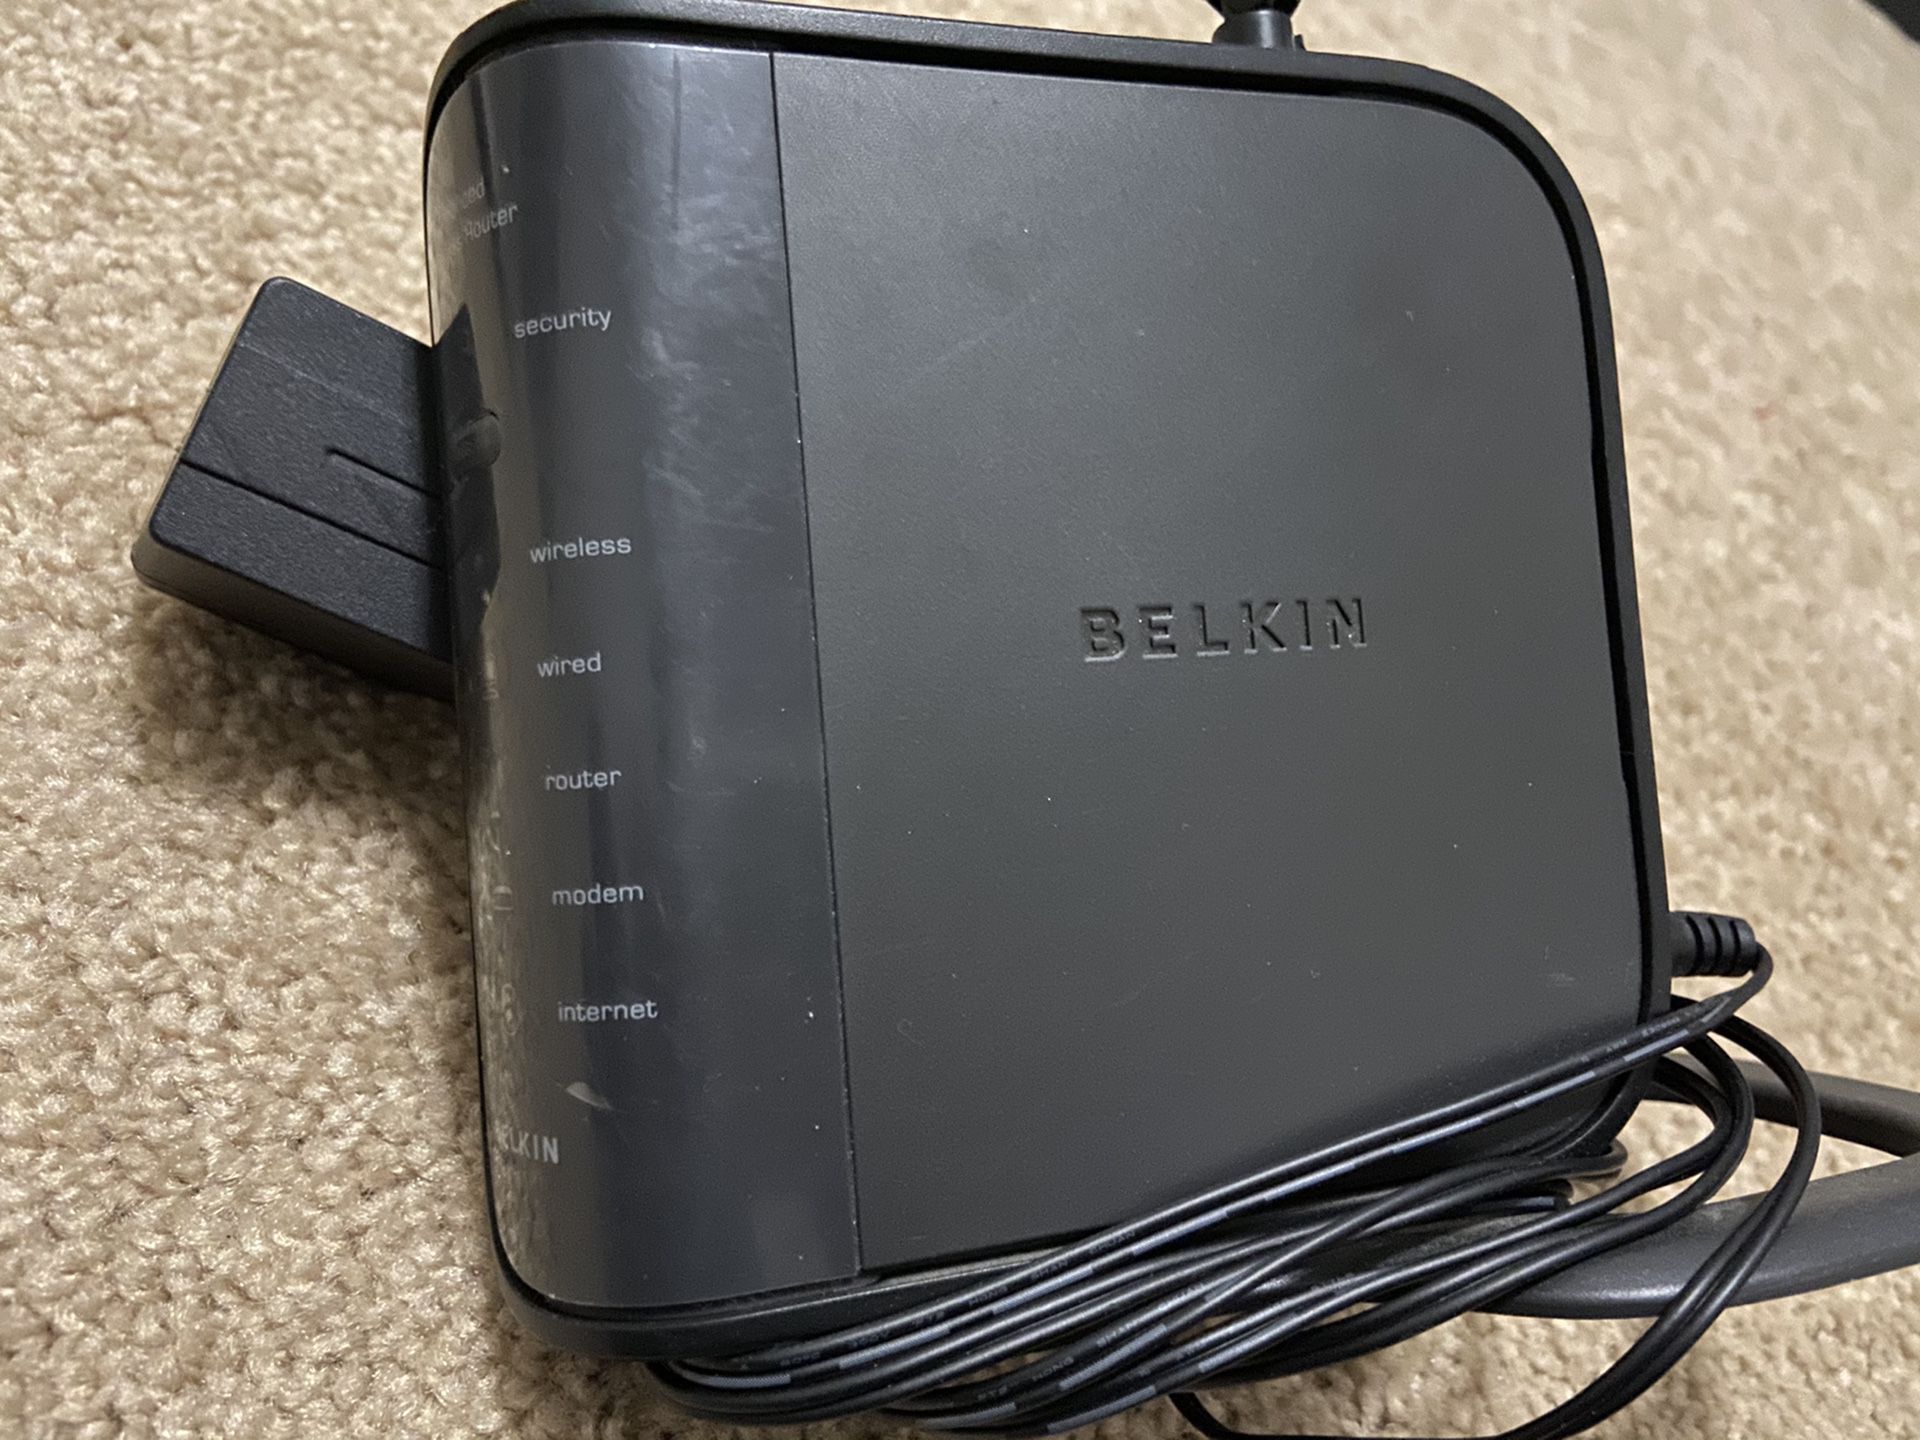 Belkin wi-fi router